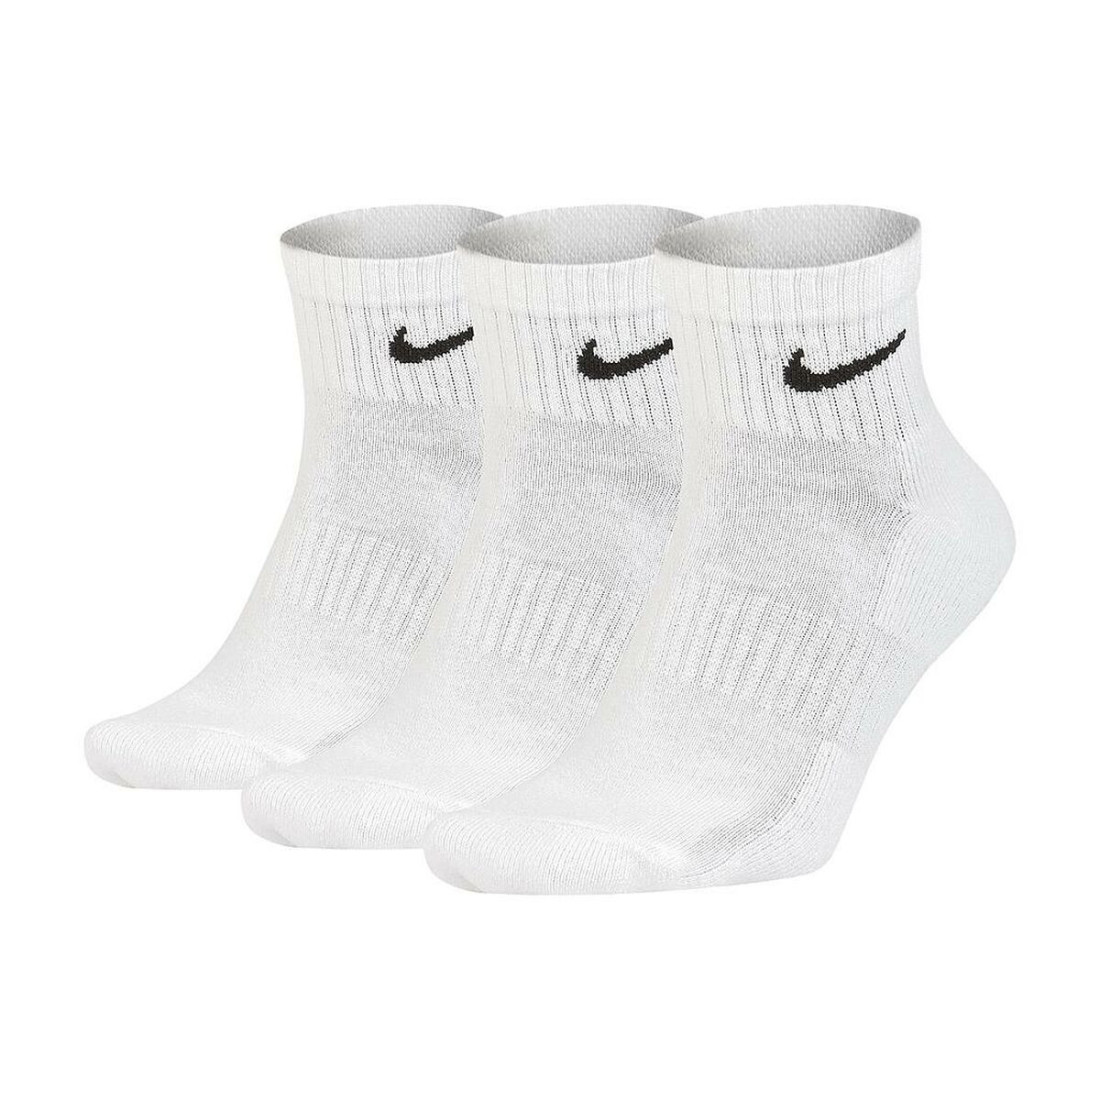 Sportinės kojinės Nike EVERYDAY CUSHIONED SX7667 100 B Balta